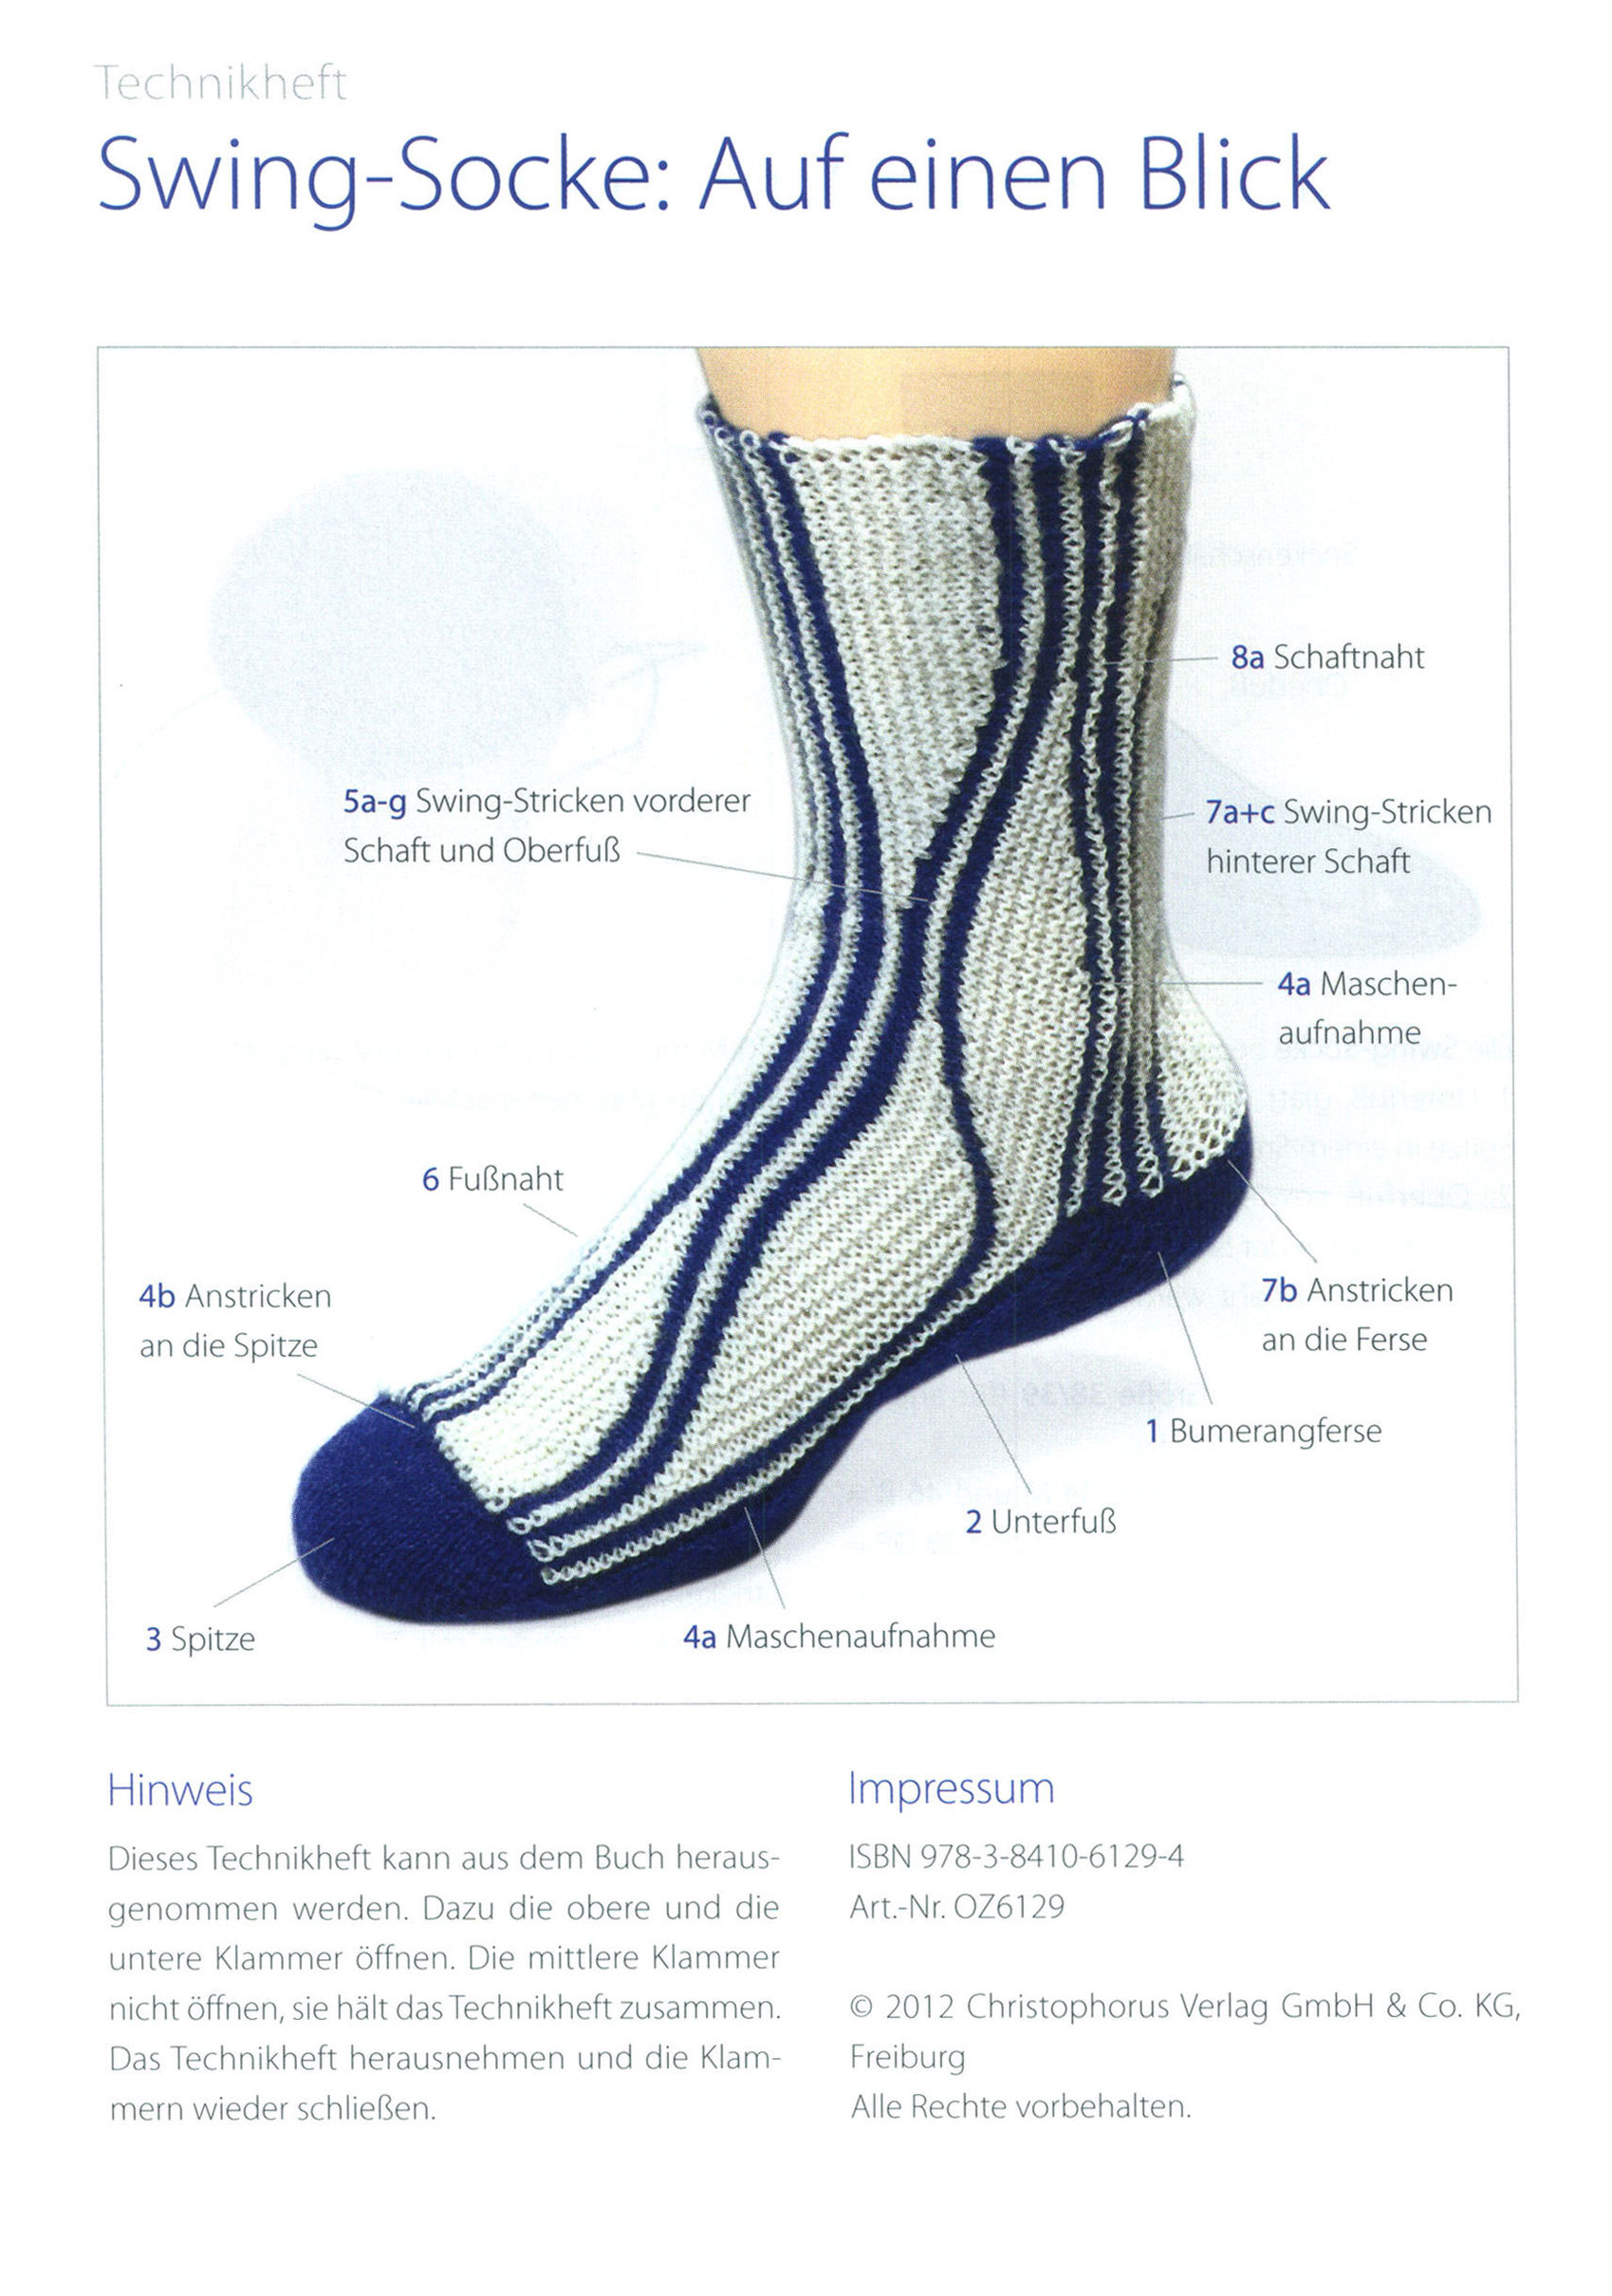 Kommentare zu Swing-Socken jetzt bei Weltbild.de lesen